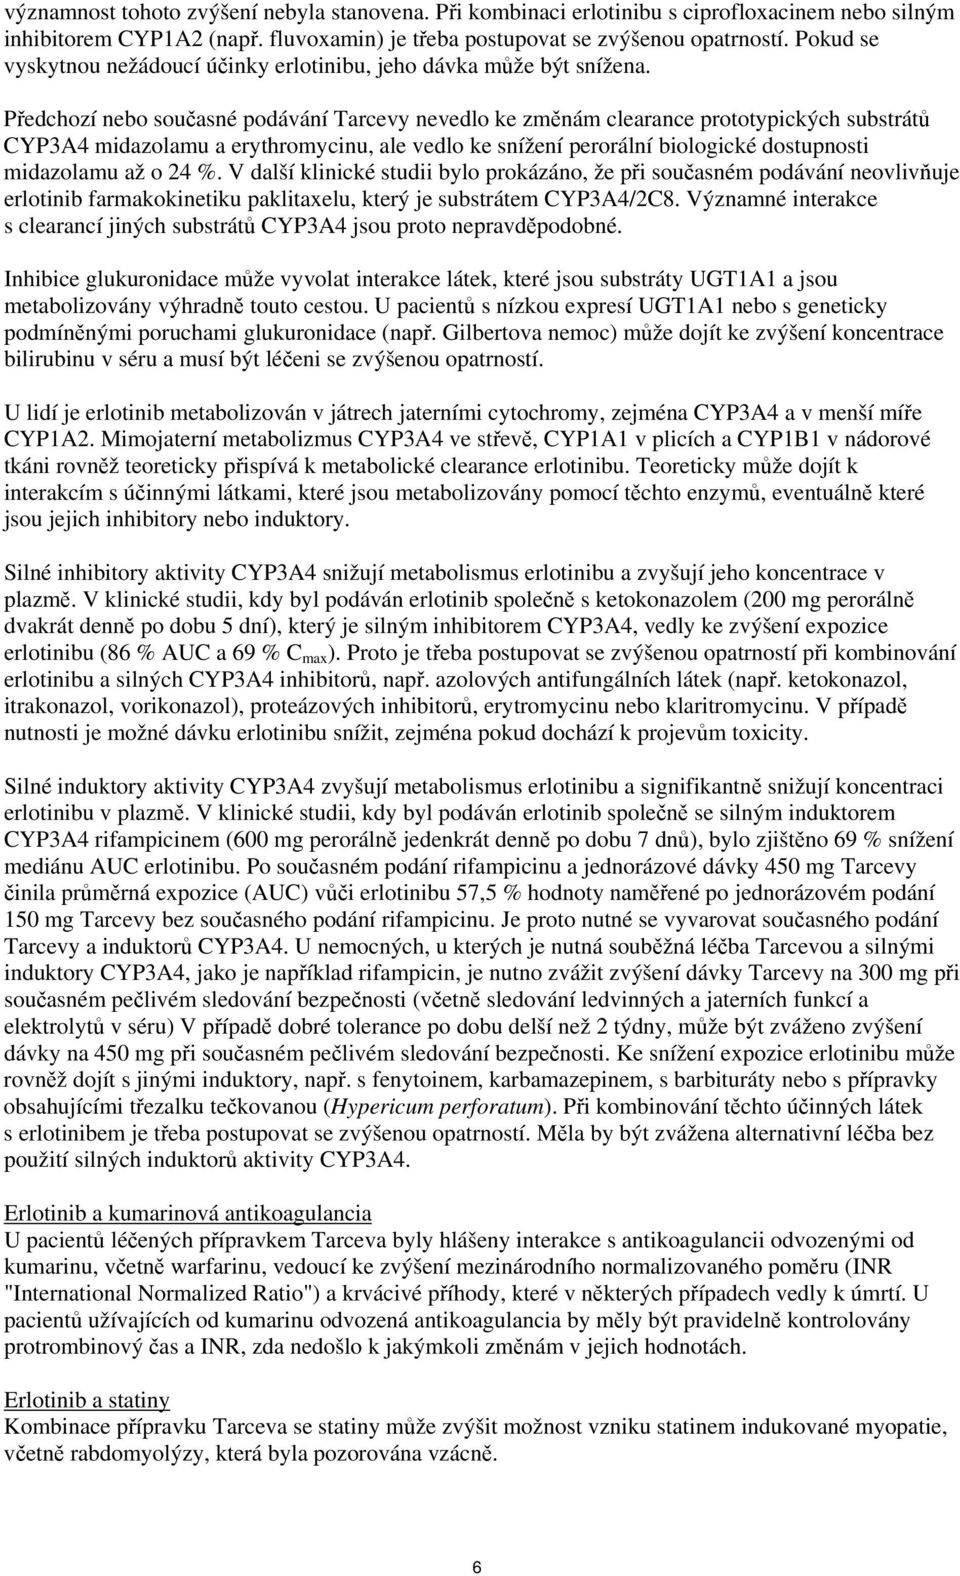 Předchozí nebo současné podávání Tarcevy nevedlo ke změnám clearance prototypických substrátů CYP3A4 midazolamu a erythromycinu, ale vedlo ke snížení perorální biologické dostupnosti midazolamu až o